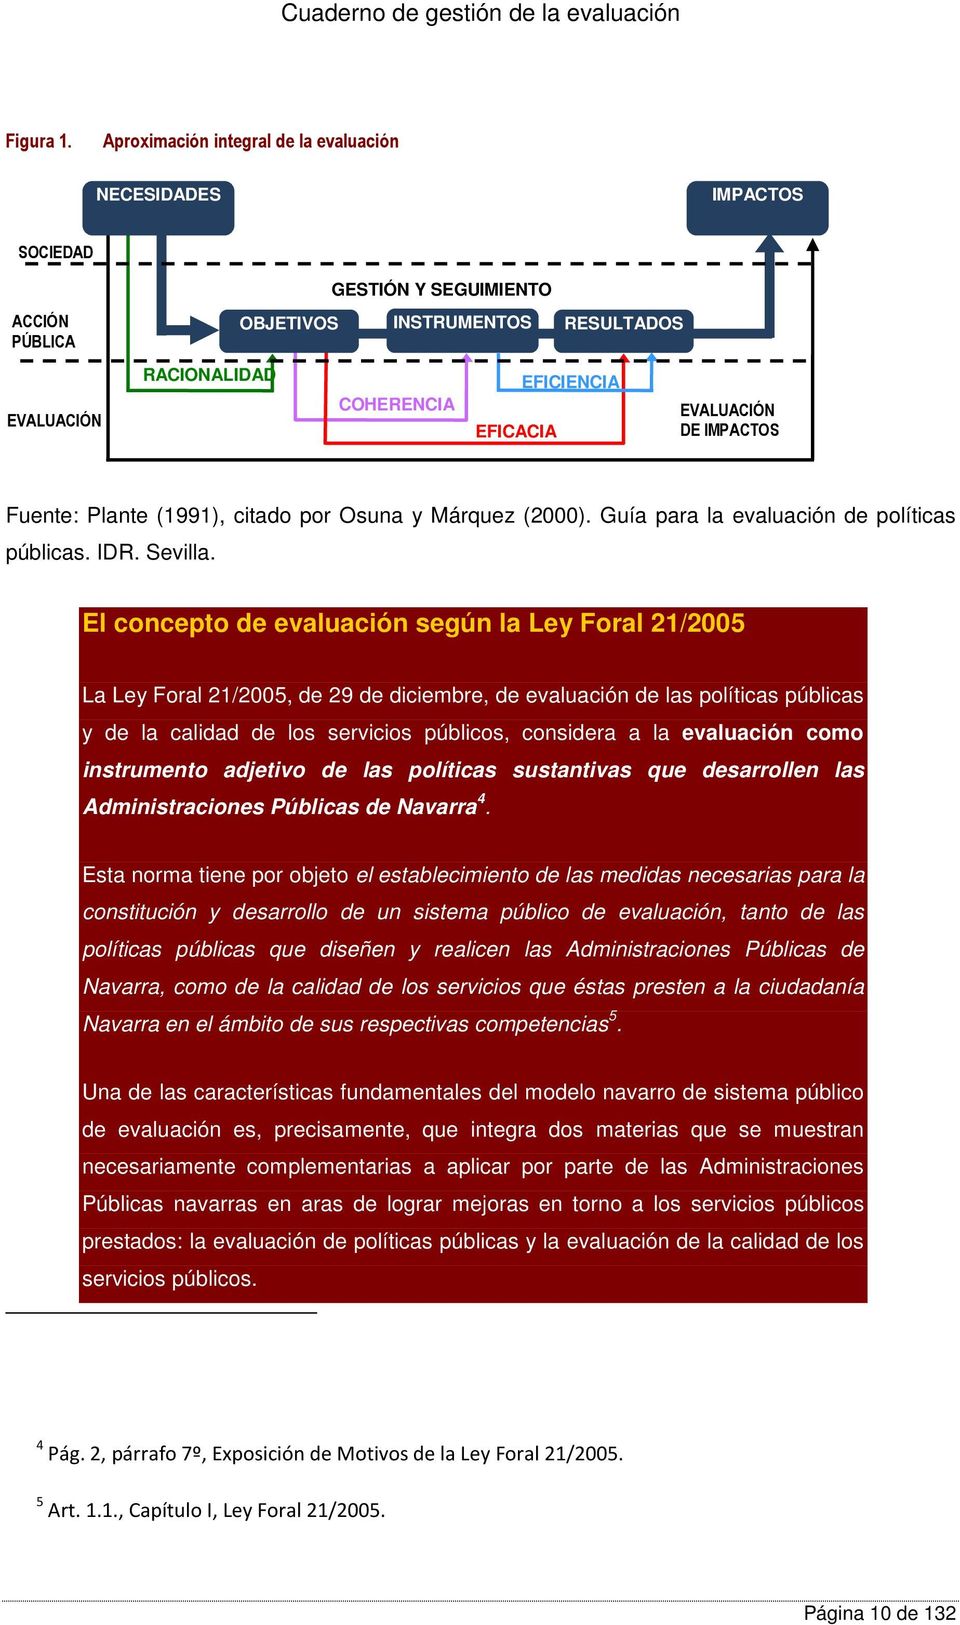 EVALUACIÓN DE IMPACTOS Fuente: Plante (1991), citado por Osuna y Márquez (2000). Guía para la evaluación de políticas públicas. IDR. Sevilla.